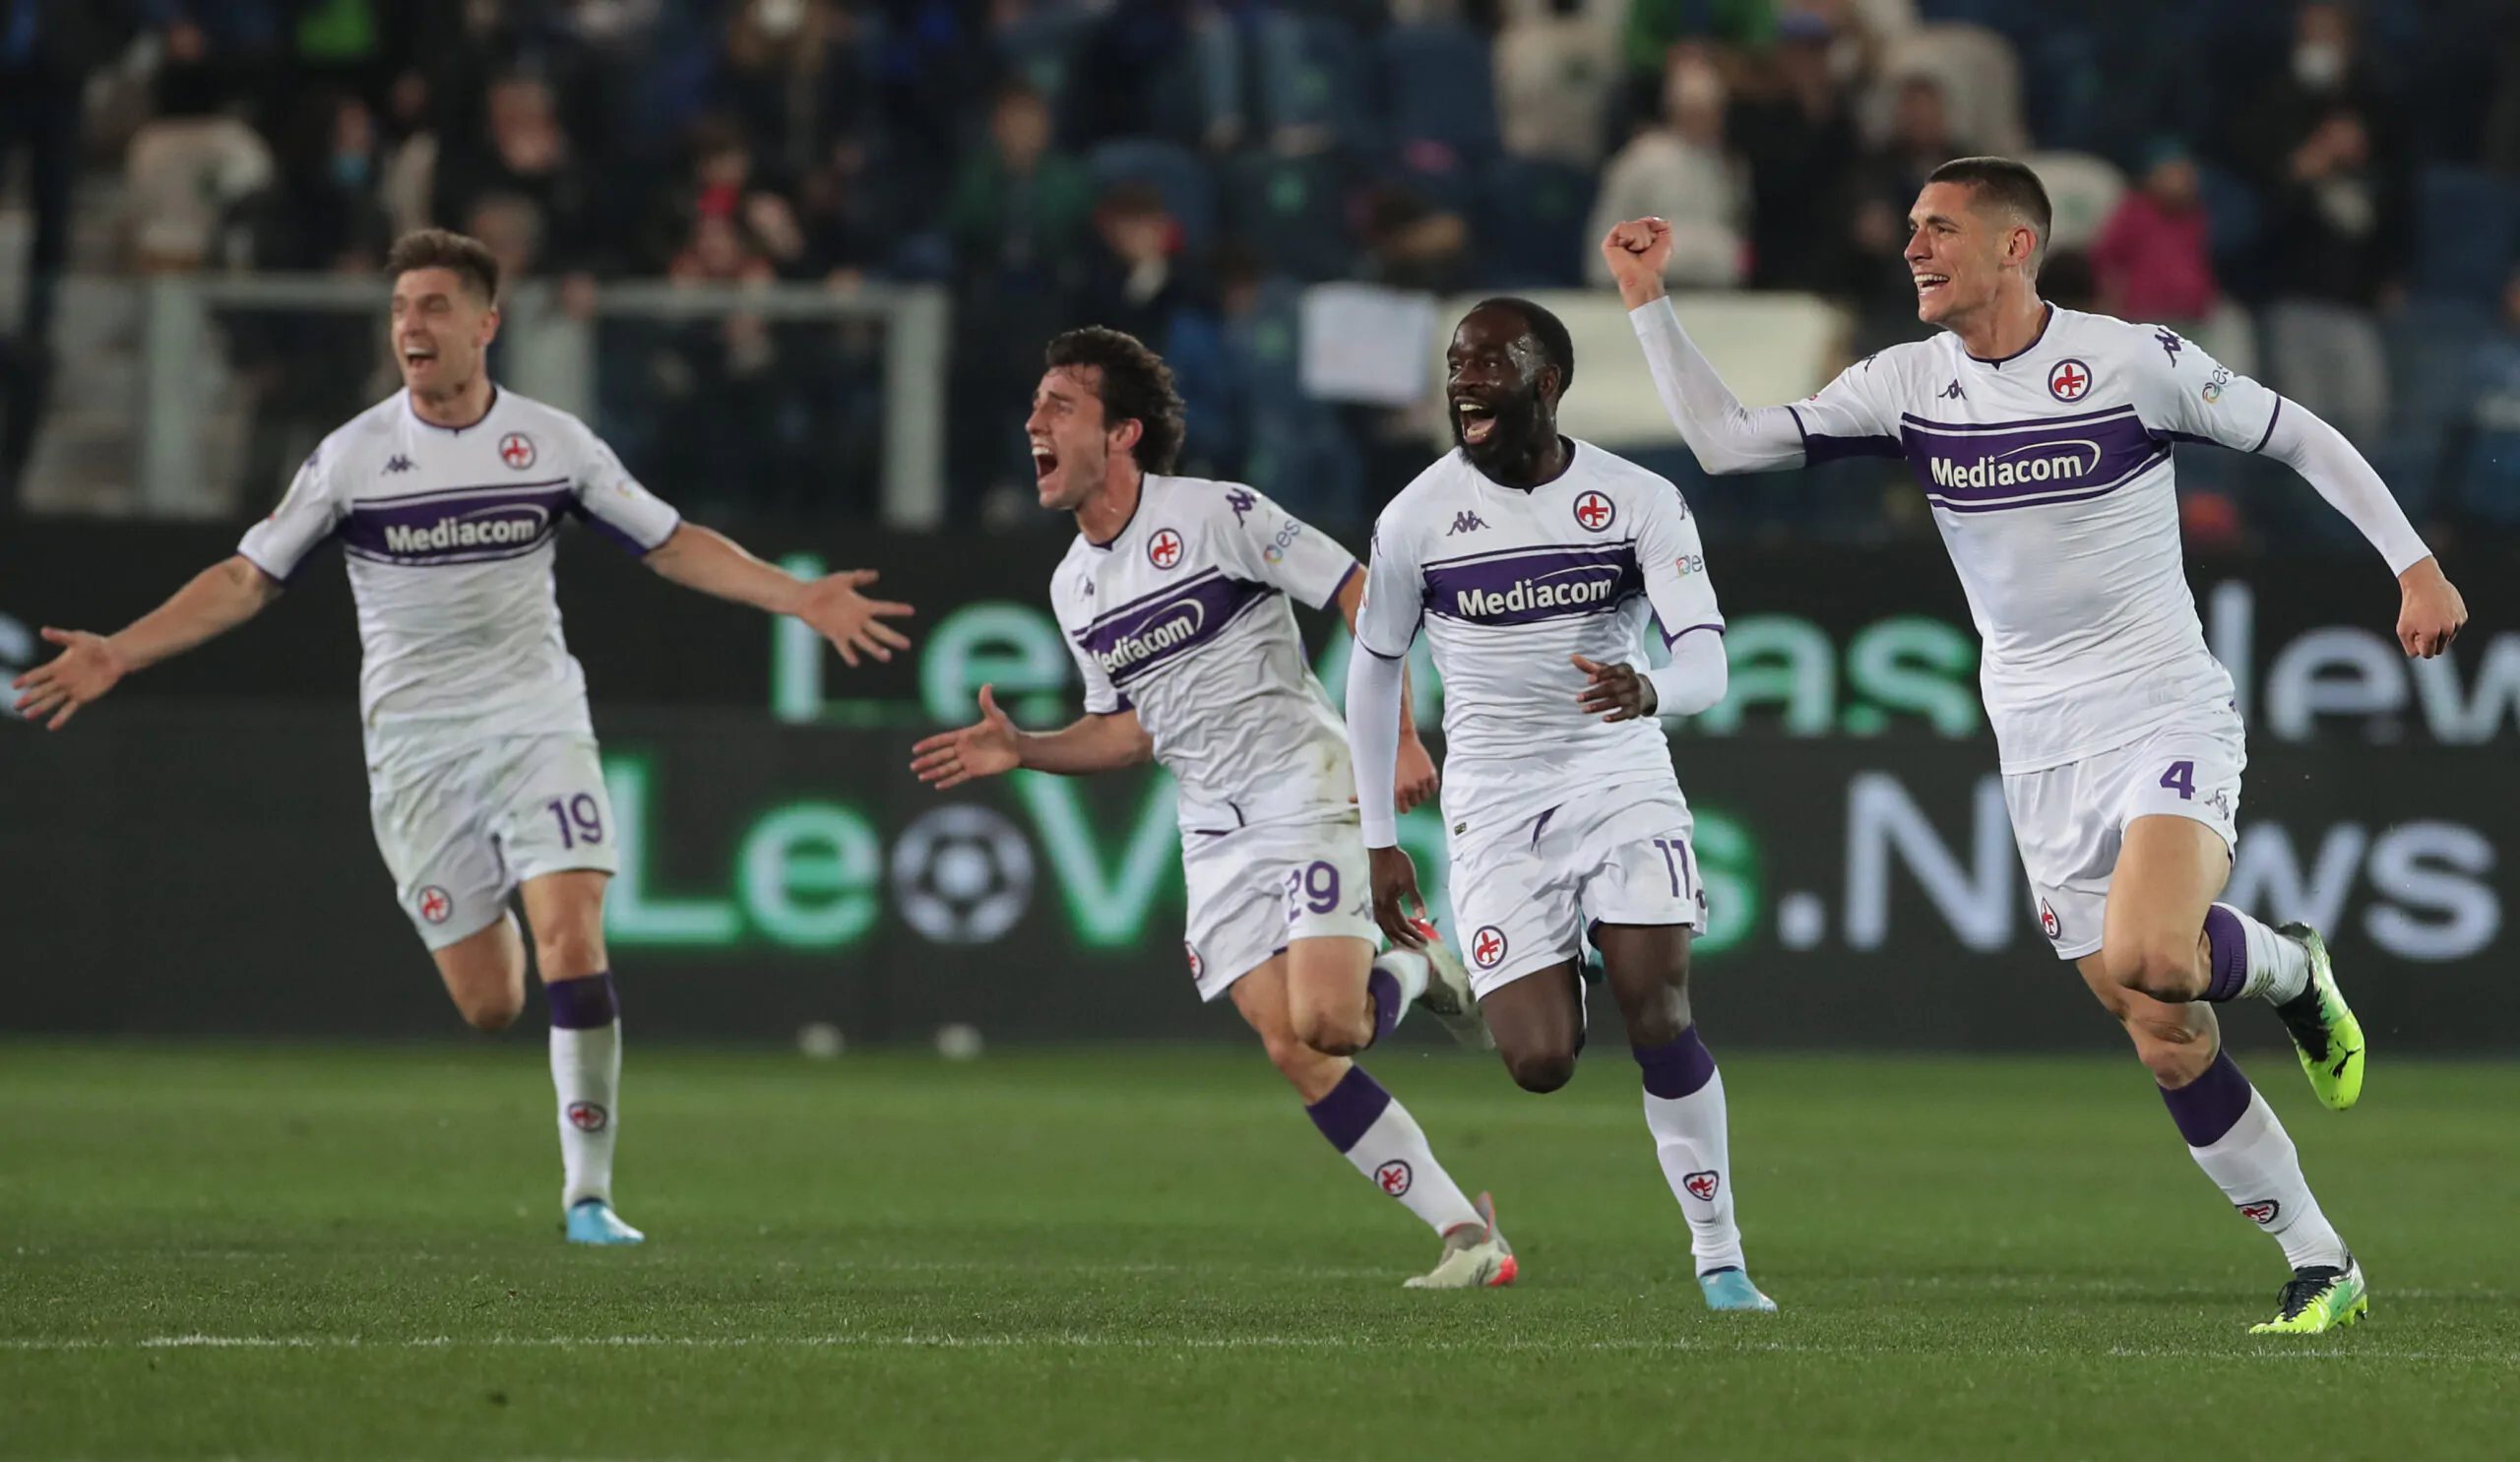 La Juventus pesca ancora dalla Fiorentina, contatti avviati per un giocatore!